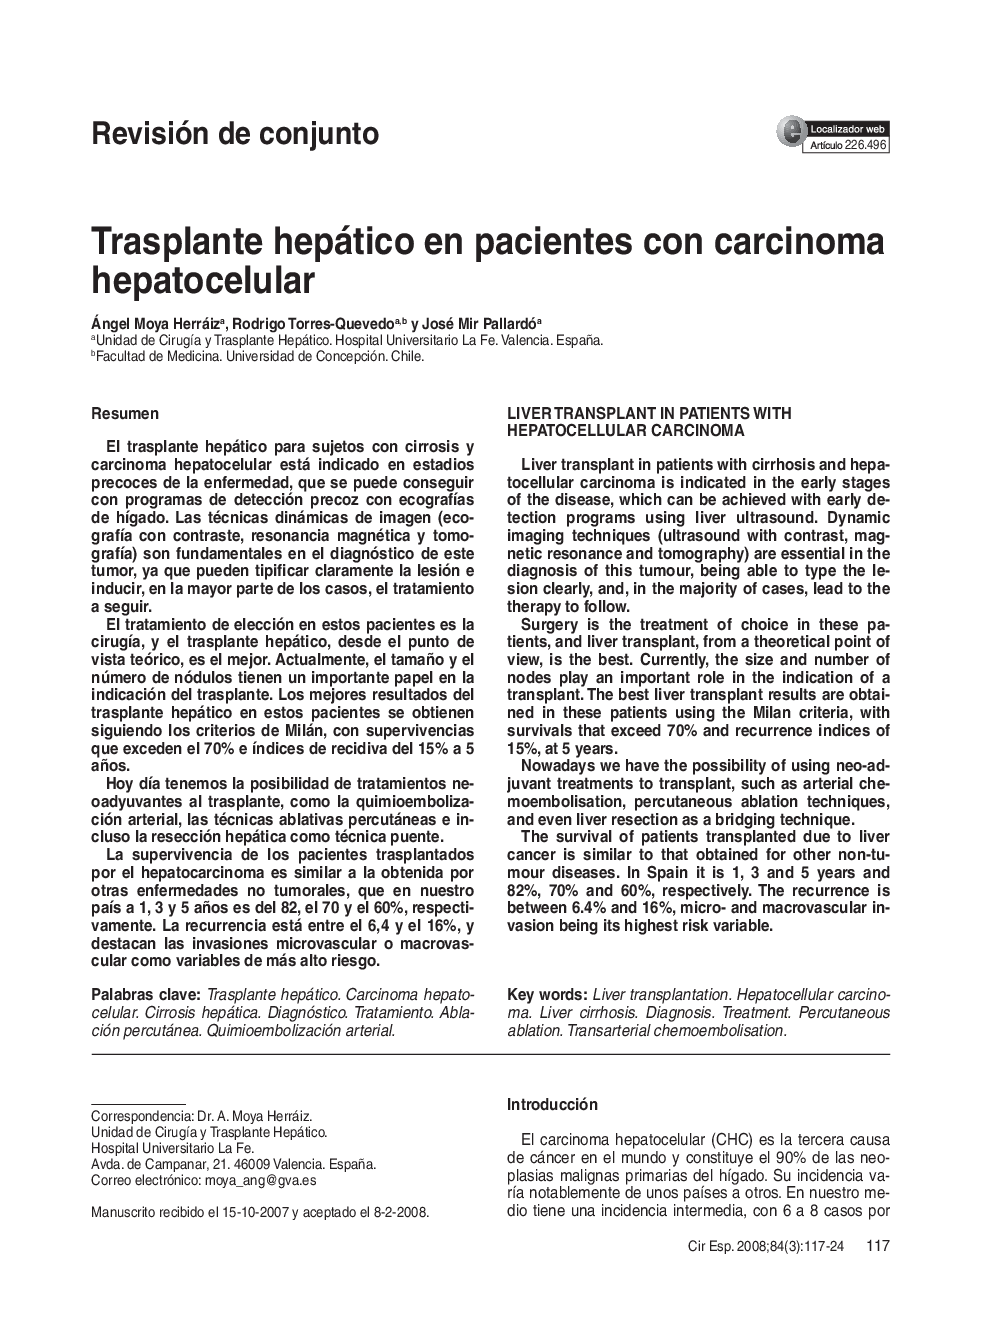 Trasplante hepático en pacientes con carcinoma hepatocelular